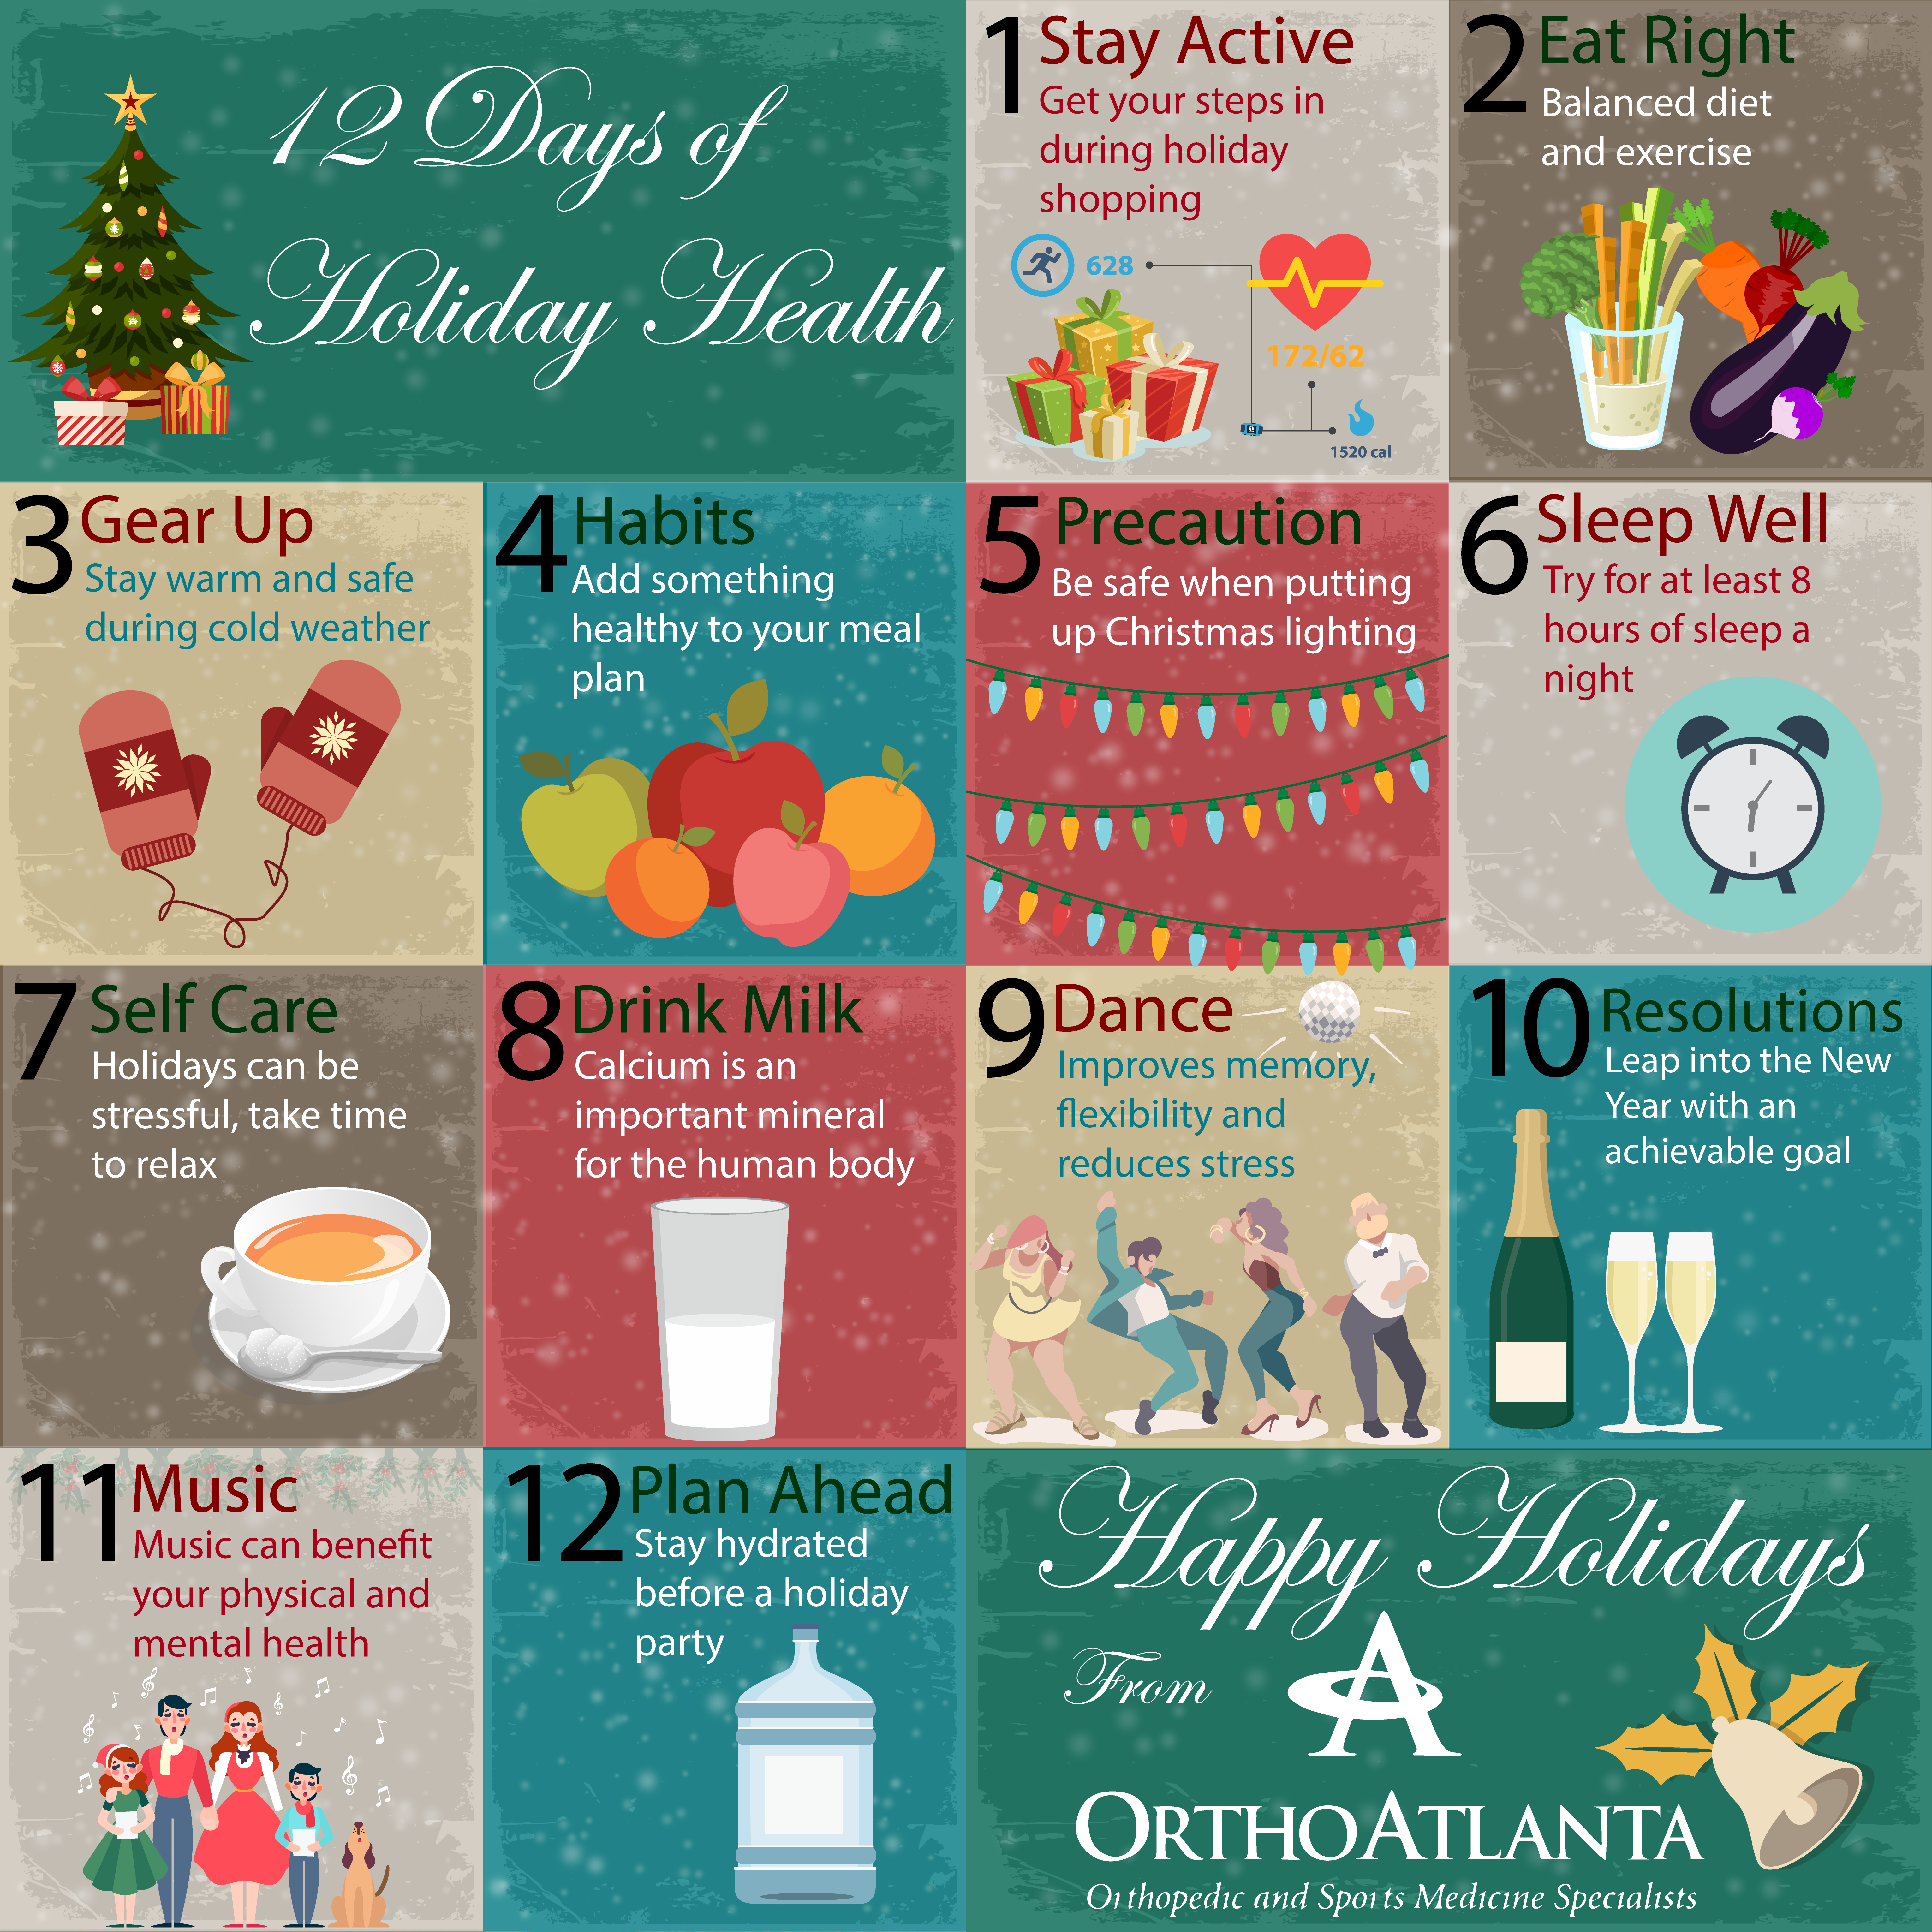 Holiday health tips from OrthoAtlanta